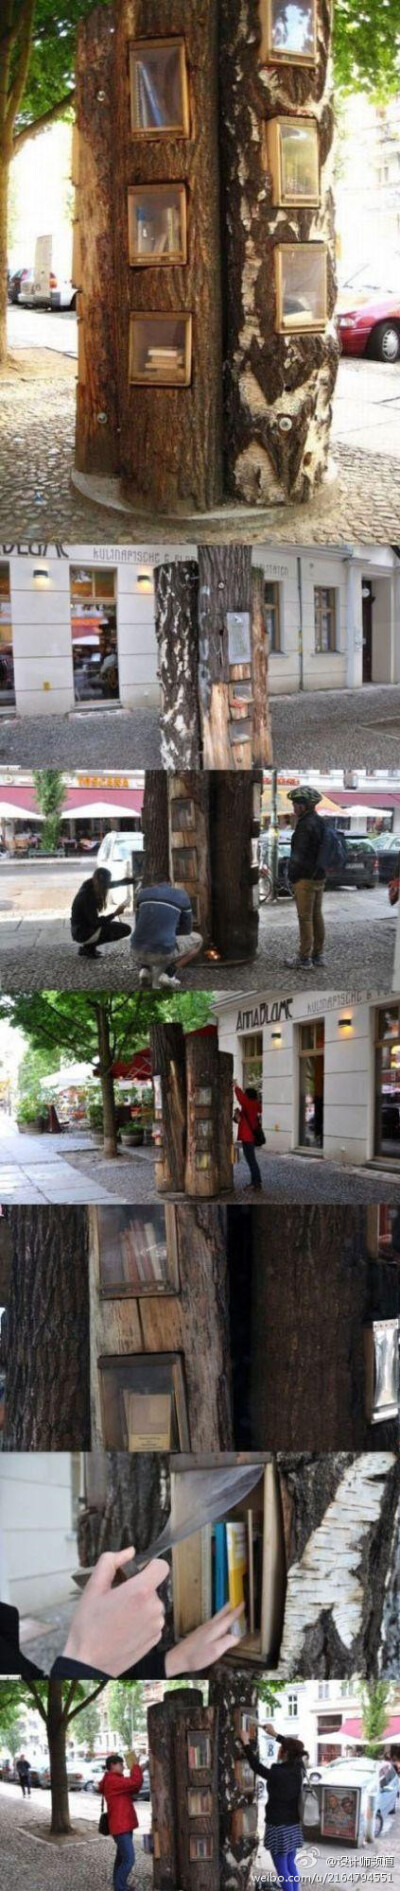 这是位于德国柏林普伦茨劳贝格街的一个免费图书交换亭。这个图书交换亭由几根树干用螺栓连接在一起，像森林里的一棵古树，来往市民可以打开塑料挡板自由交换书籍。很有创意的换书方式，赞！（转）